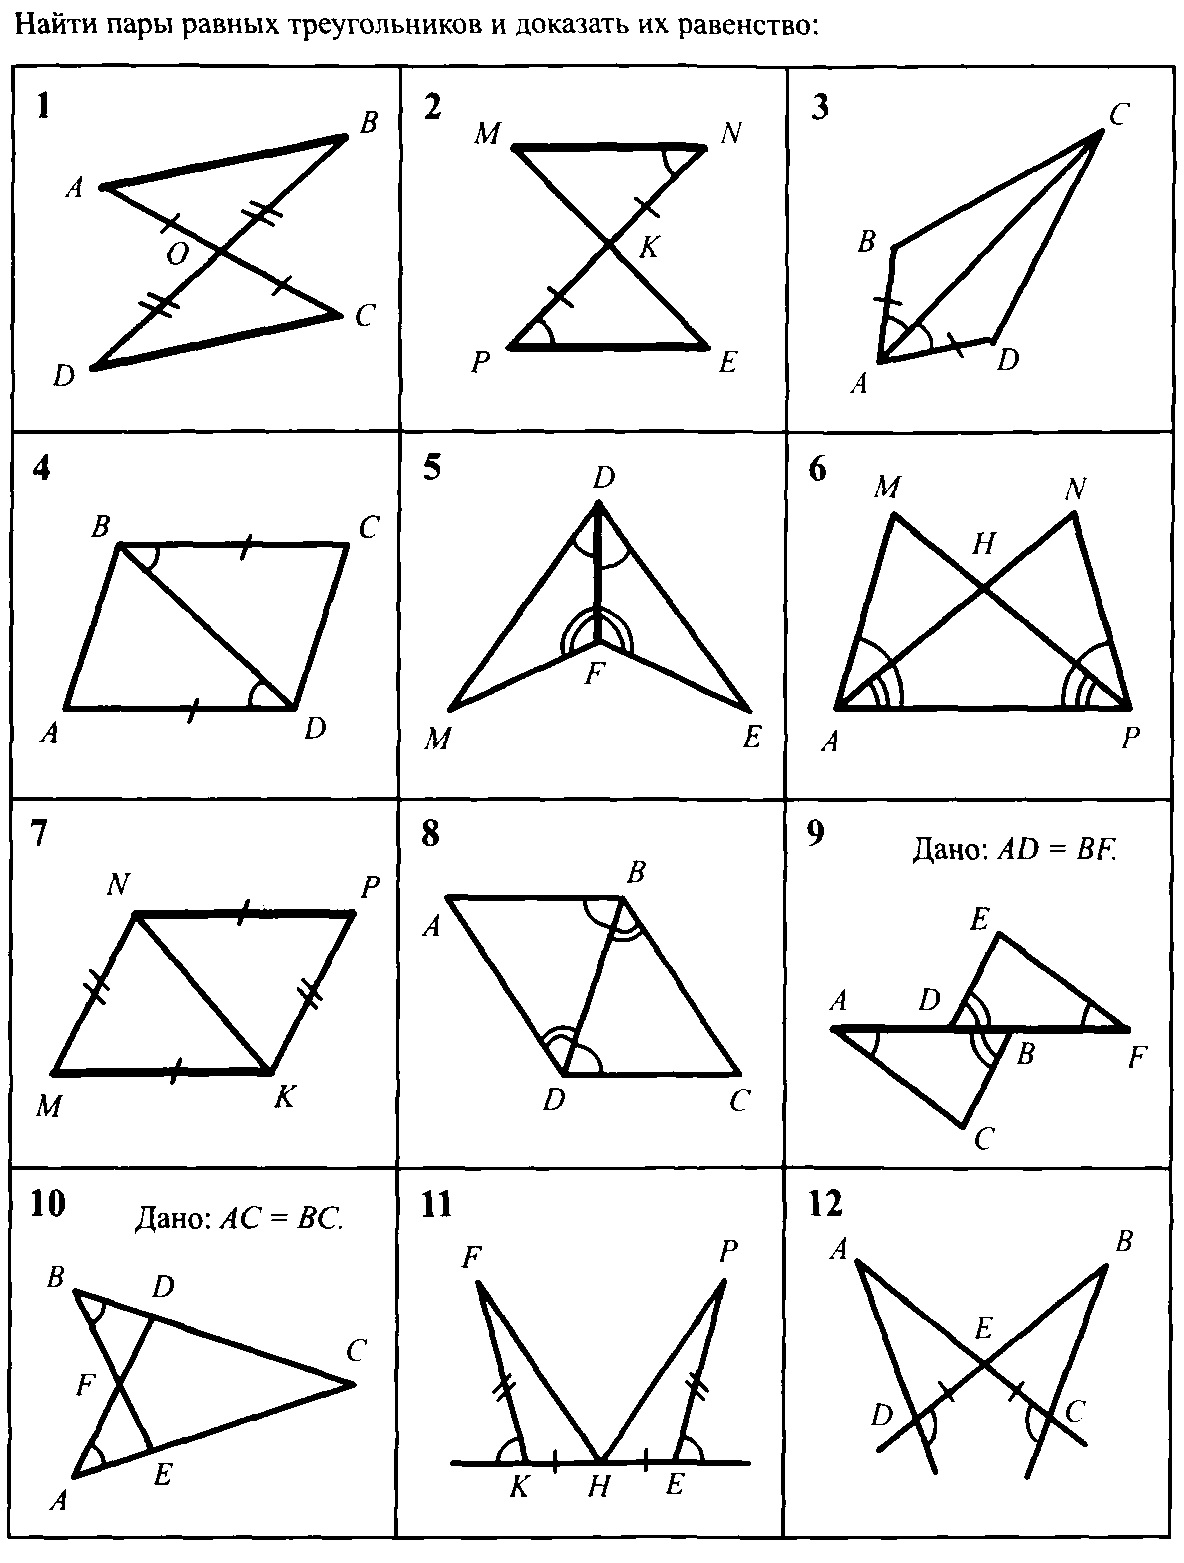 Геометрия на чертежах 7 9. Задачи на равенство треугольников по готовым чертежам. 1 Признак равенства треугольников задачи по готовым чертежам. Третий признак равенства треугольников задачи по готовым чертежам. Задачи на доказательство равенства треугольников по 3 признаку.